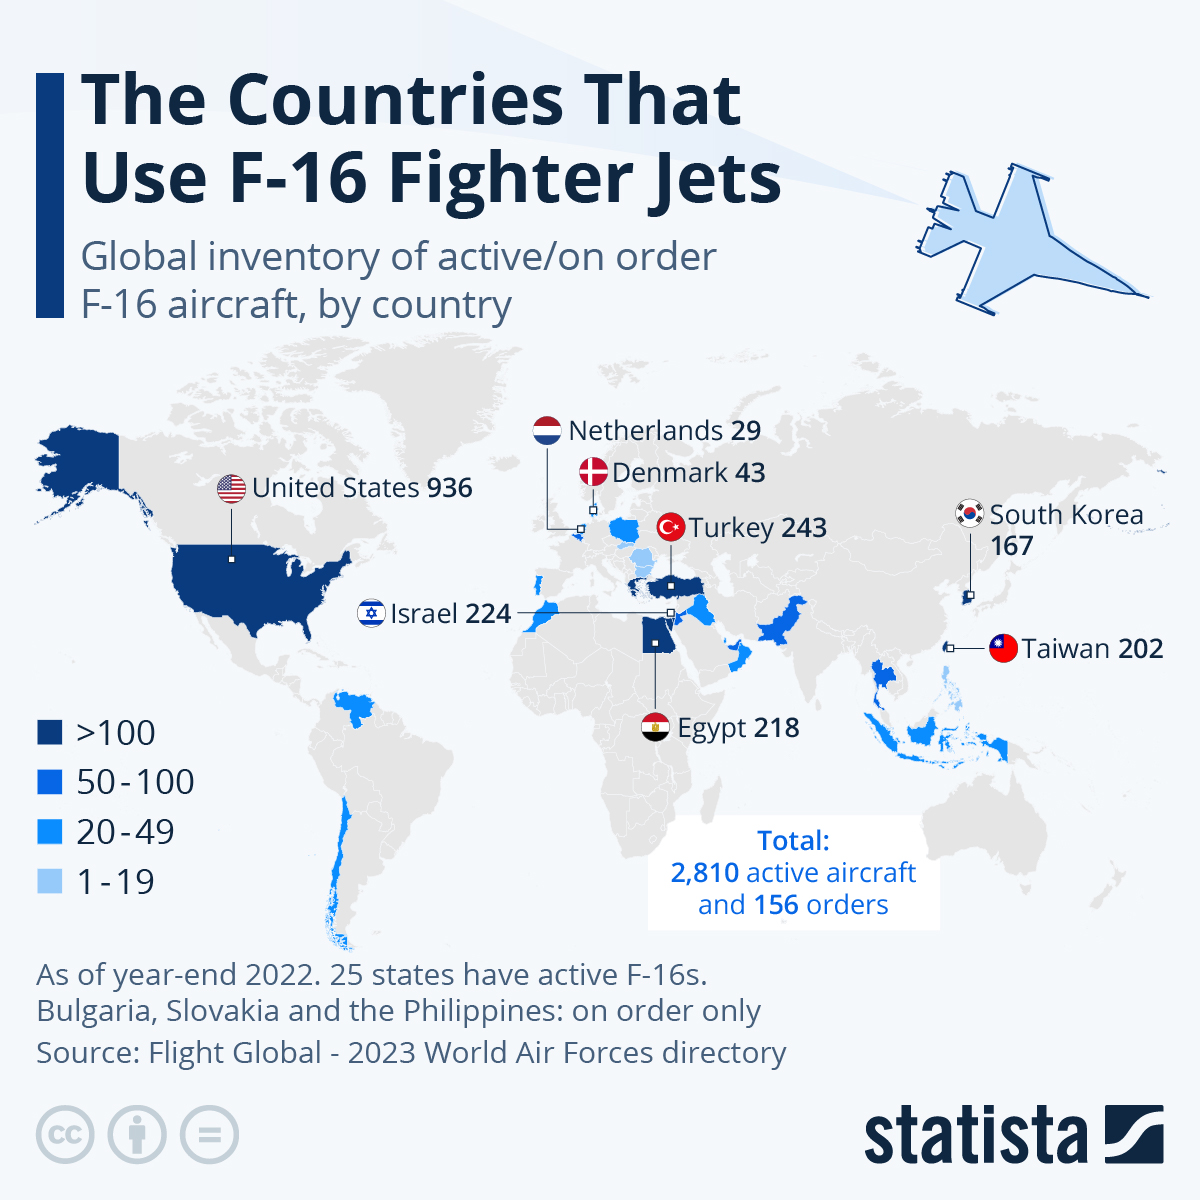 Какие страны имеют наибольшее количество истребителей F-16 - фото 2